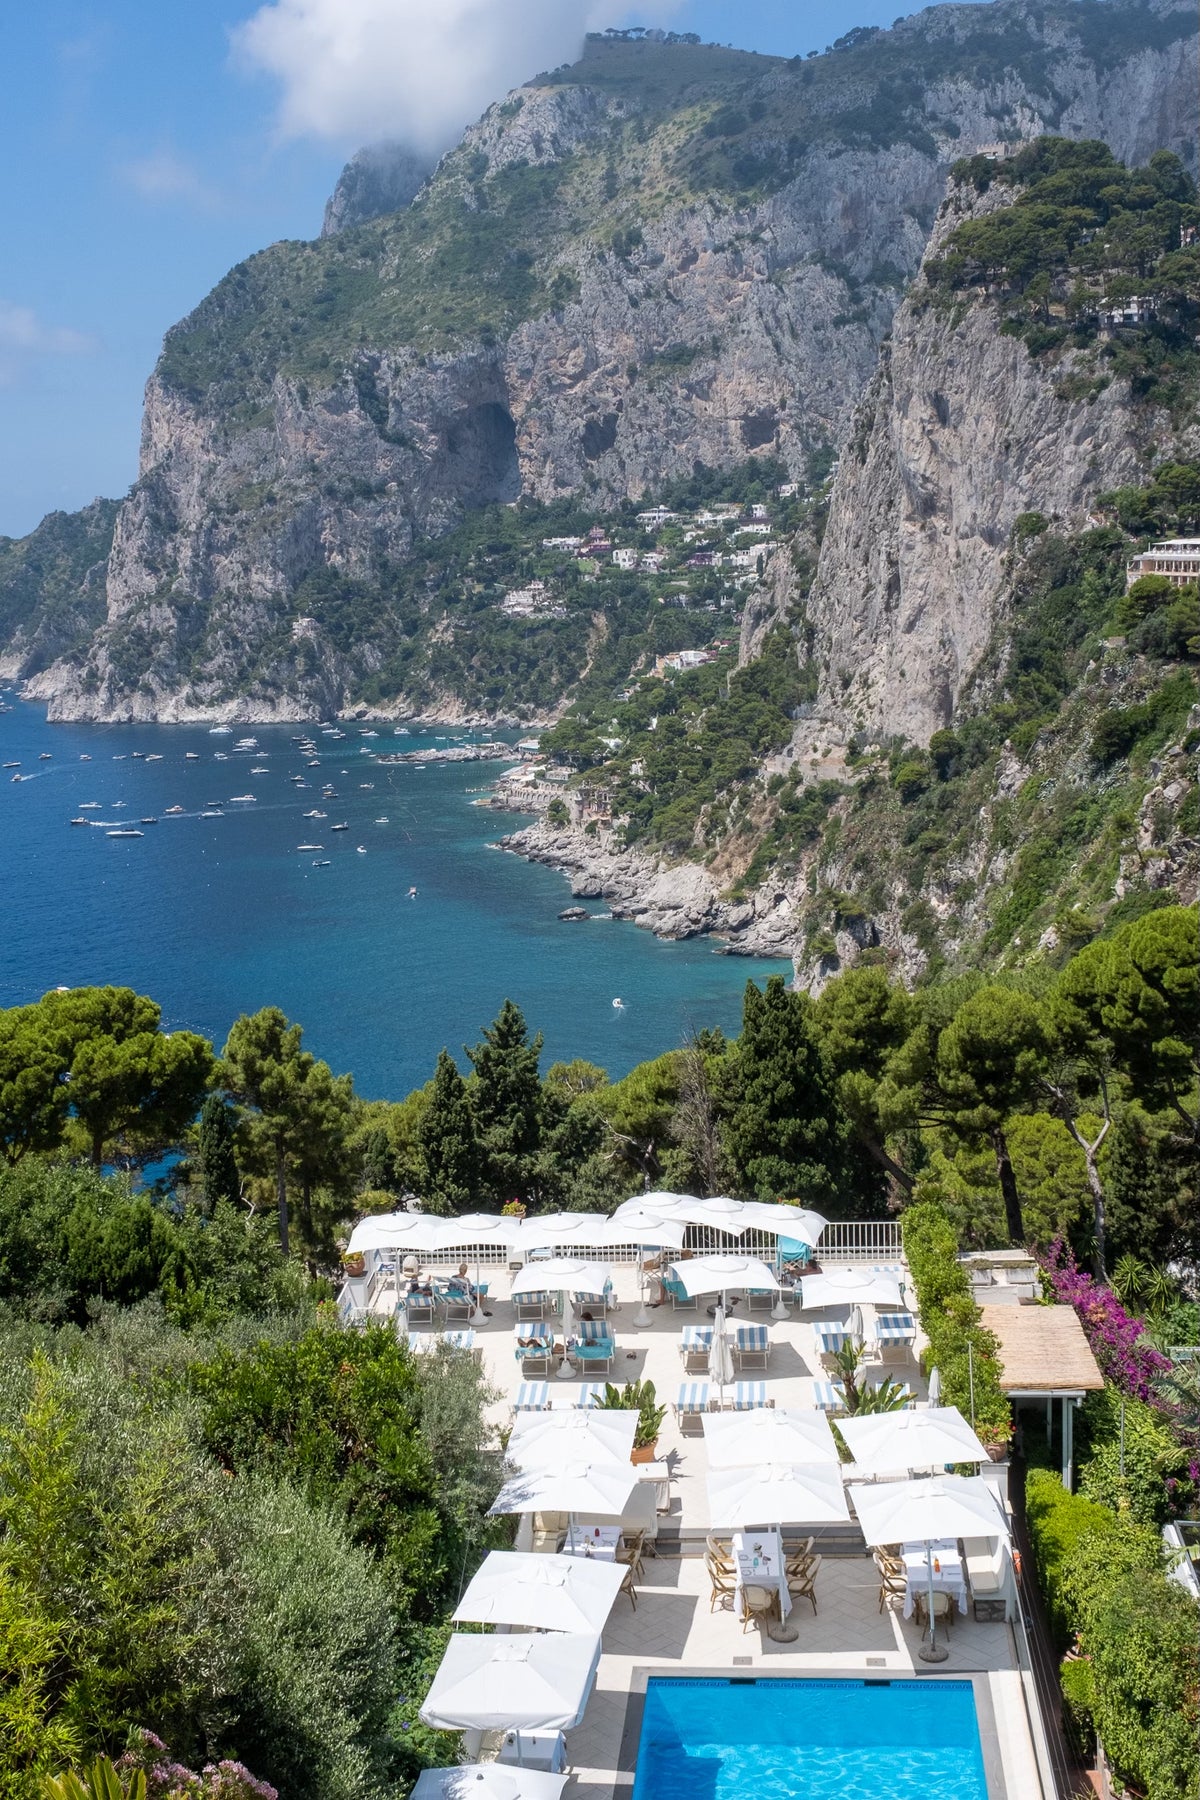 Summer Holiday in Capri